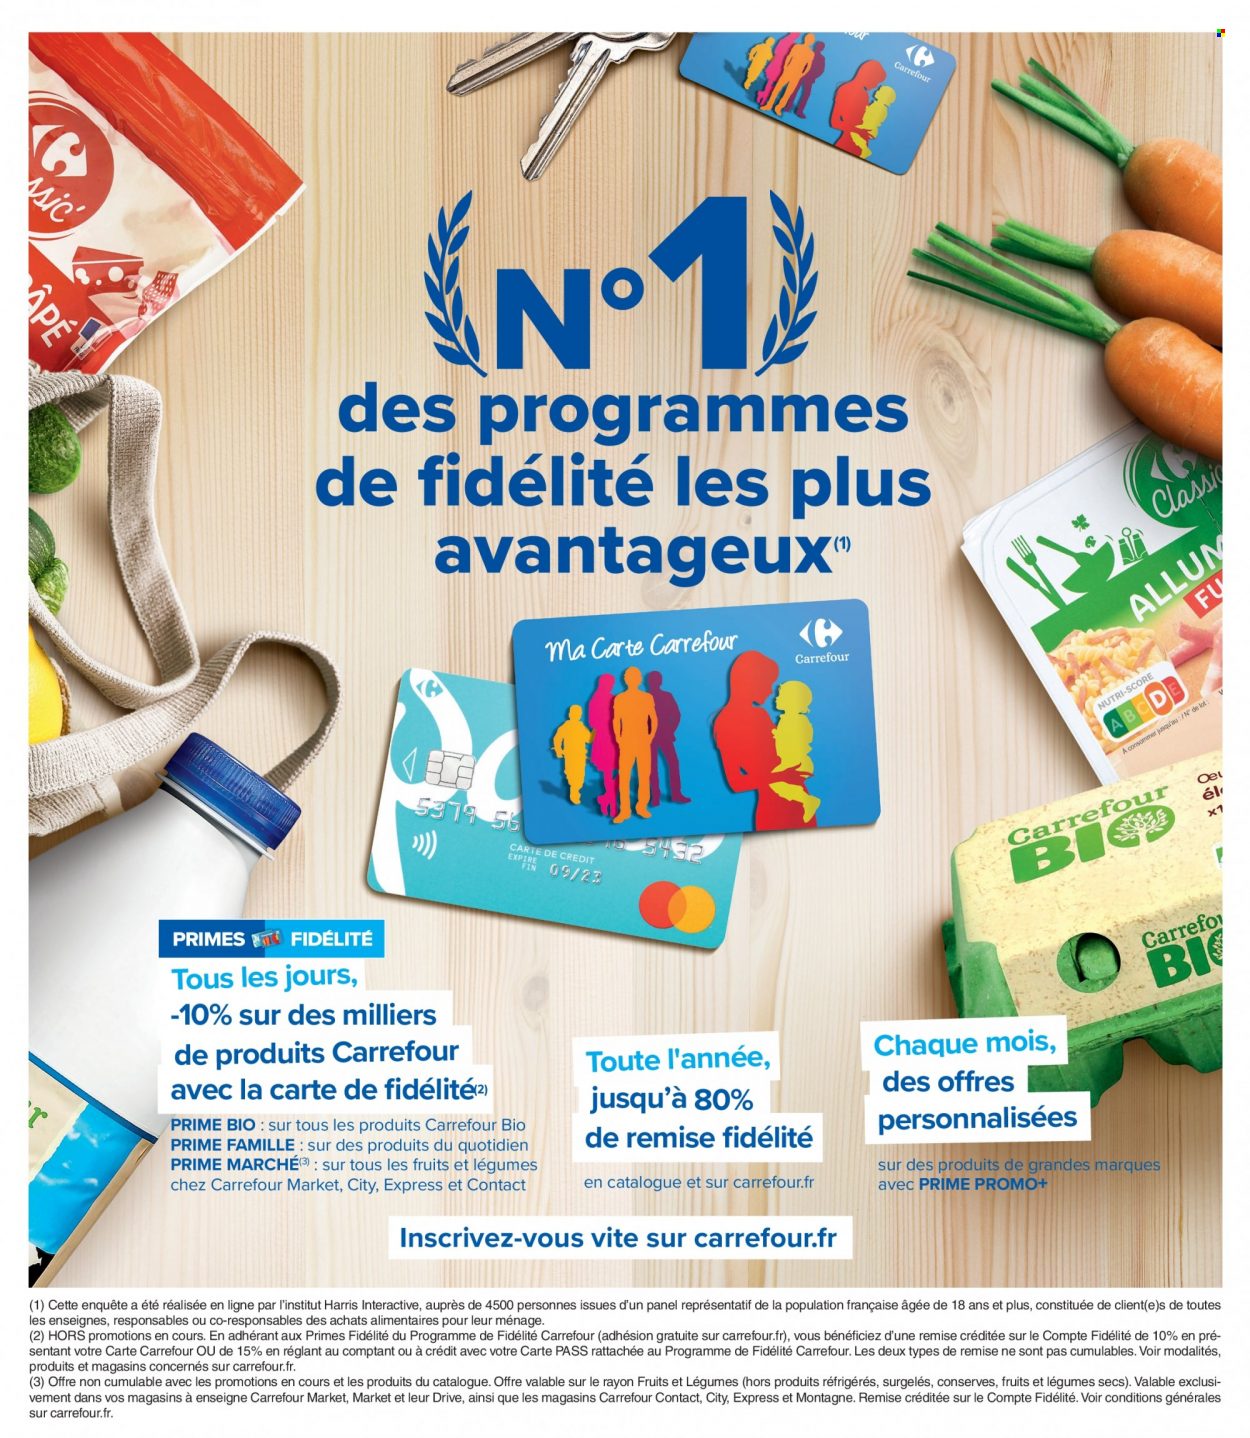 Catalogue Carrefour Hypermarchés - 10.05.2022 - 23.05.2022. 